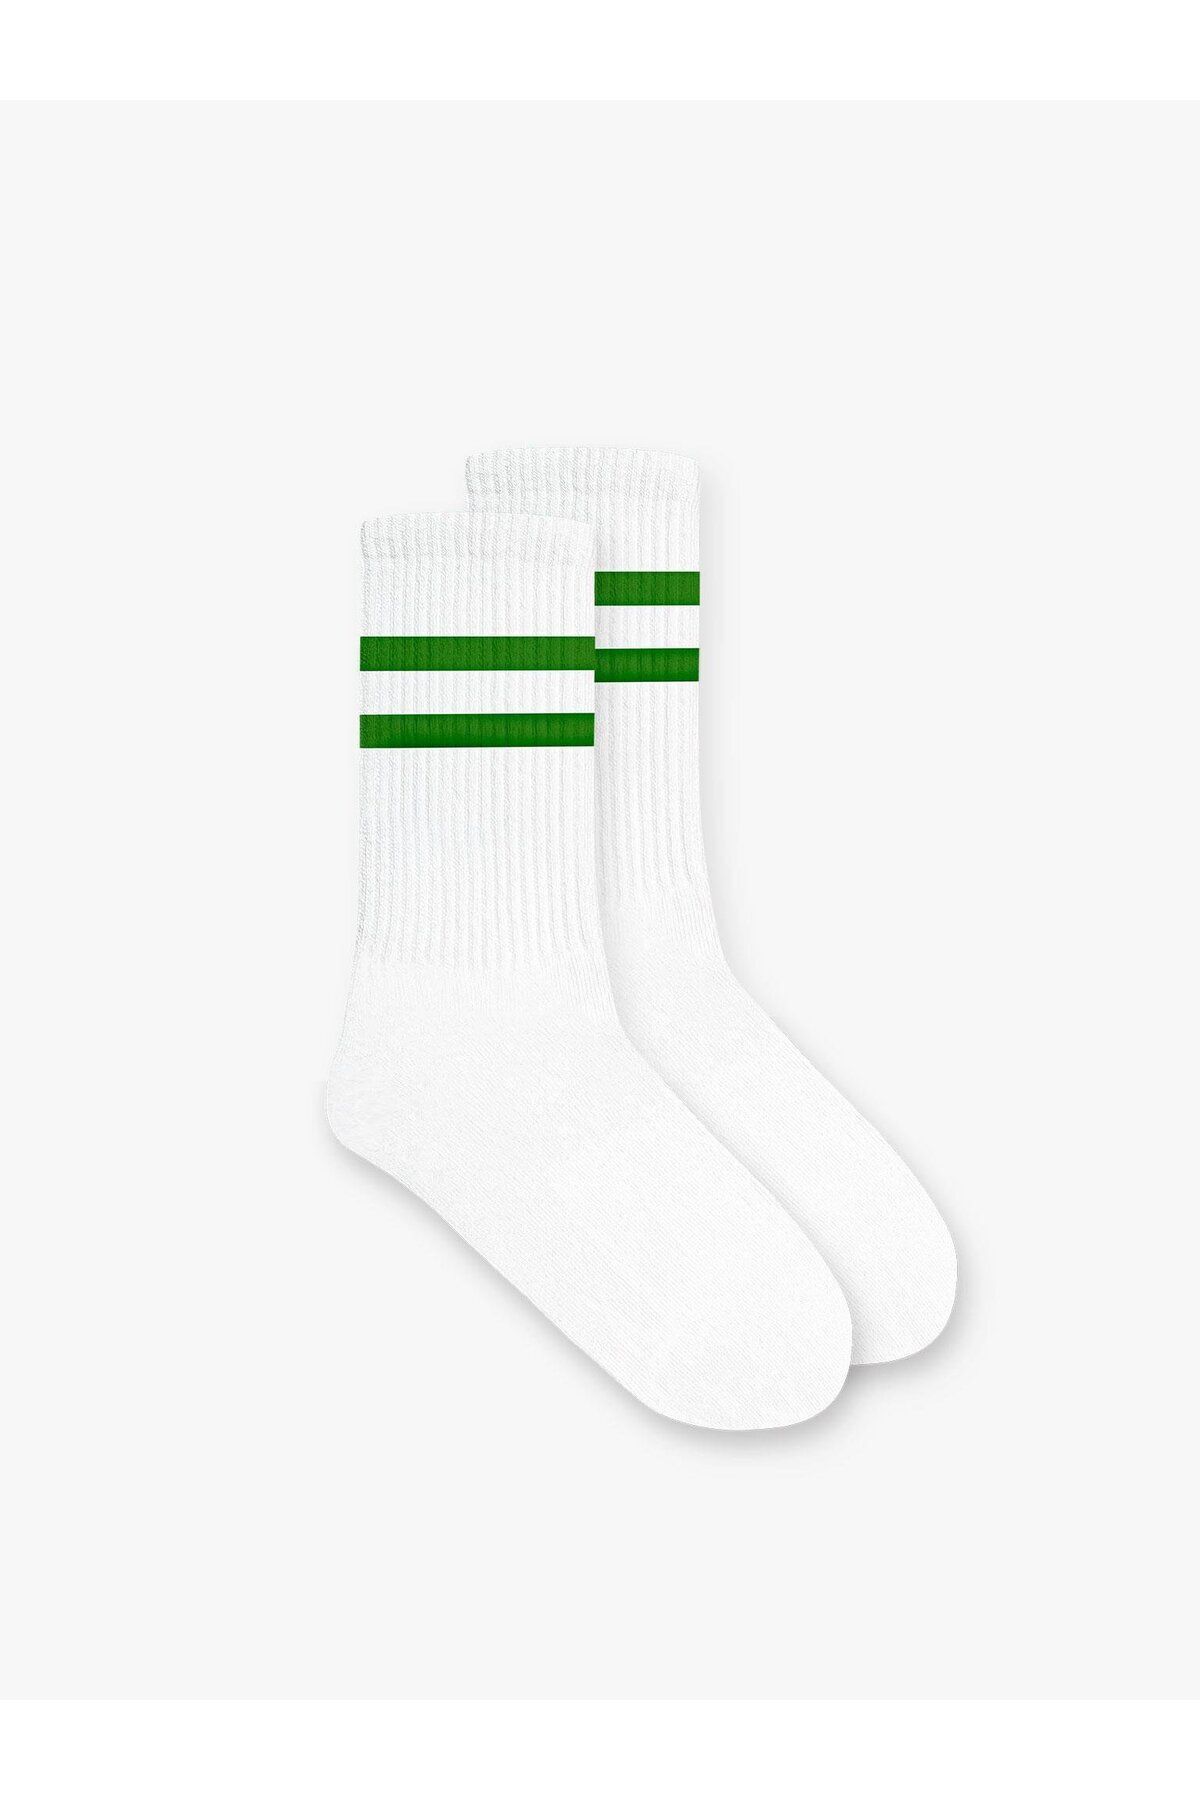 ablukaonline Unisex Çizgili Desenli Uzun Kolej Tenis Çorap Yeşil CRP.0011